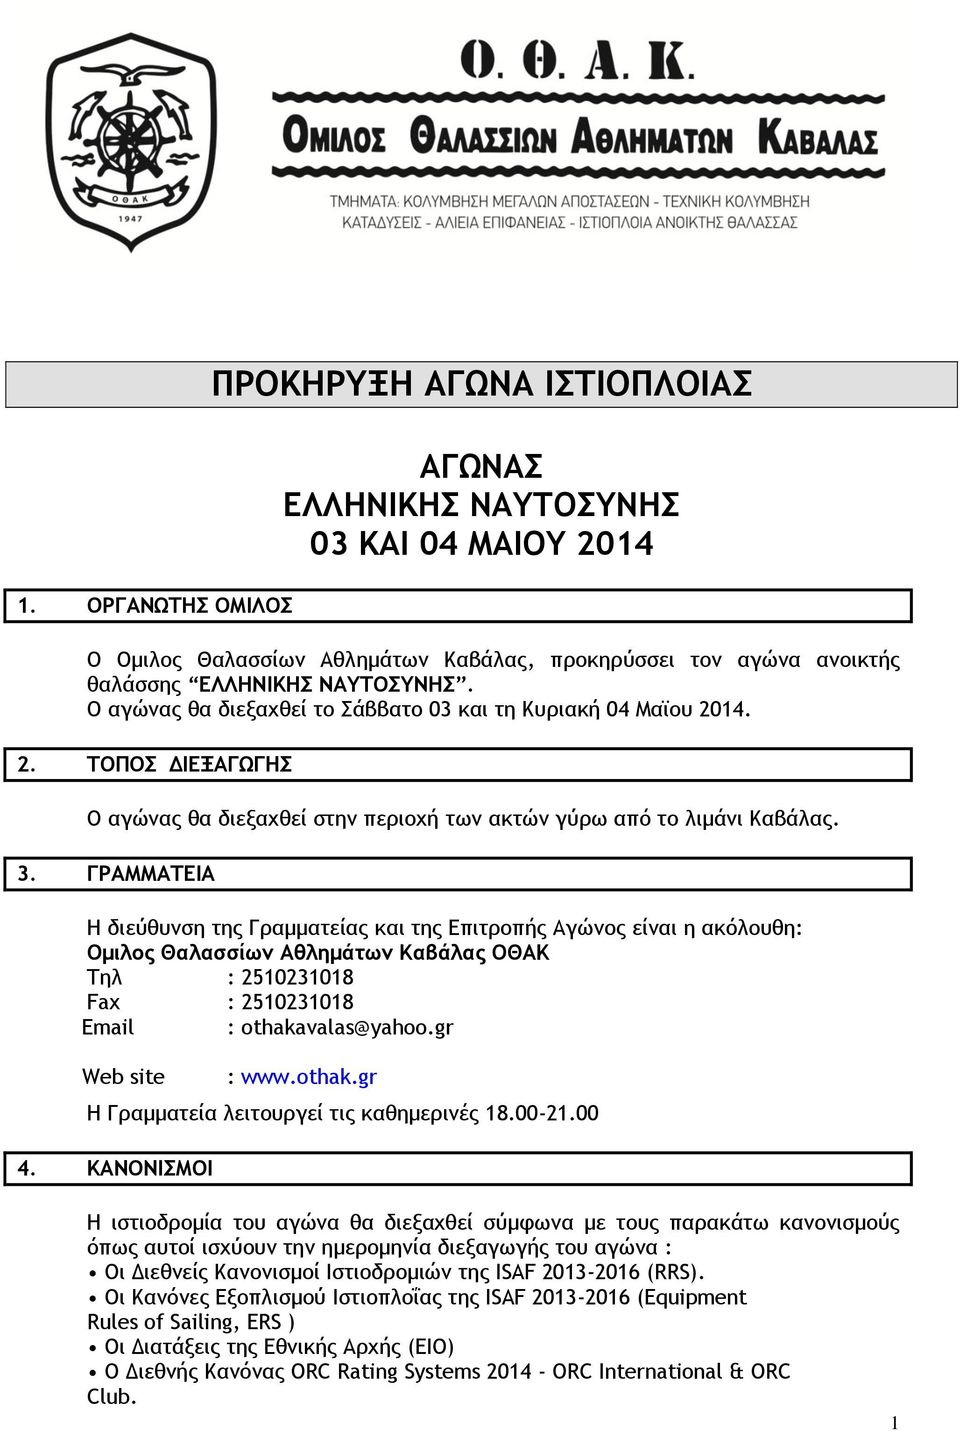 ΓΡΑΜΜΑΤΕΙΑ Η διεύθυνση της Γραμματείας και της Επιτροπής Αγώνος είναι η ακόλουθη: Ομιλος Θαλασσίων Αθλημάτων Καβάλας ΟΘΑΚ Τηλ : 2510231018 Fax : 2510231018 Email : othakavalas@yahoo.gr Web site : www.